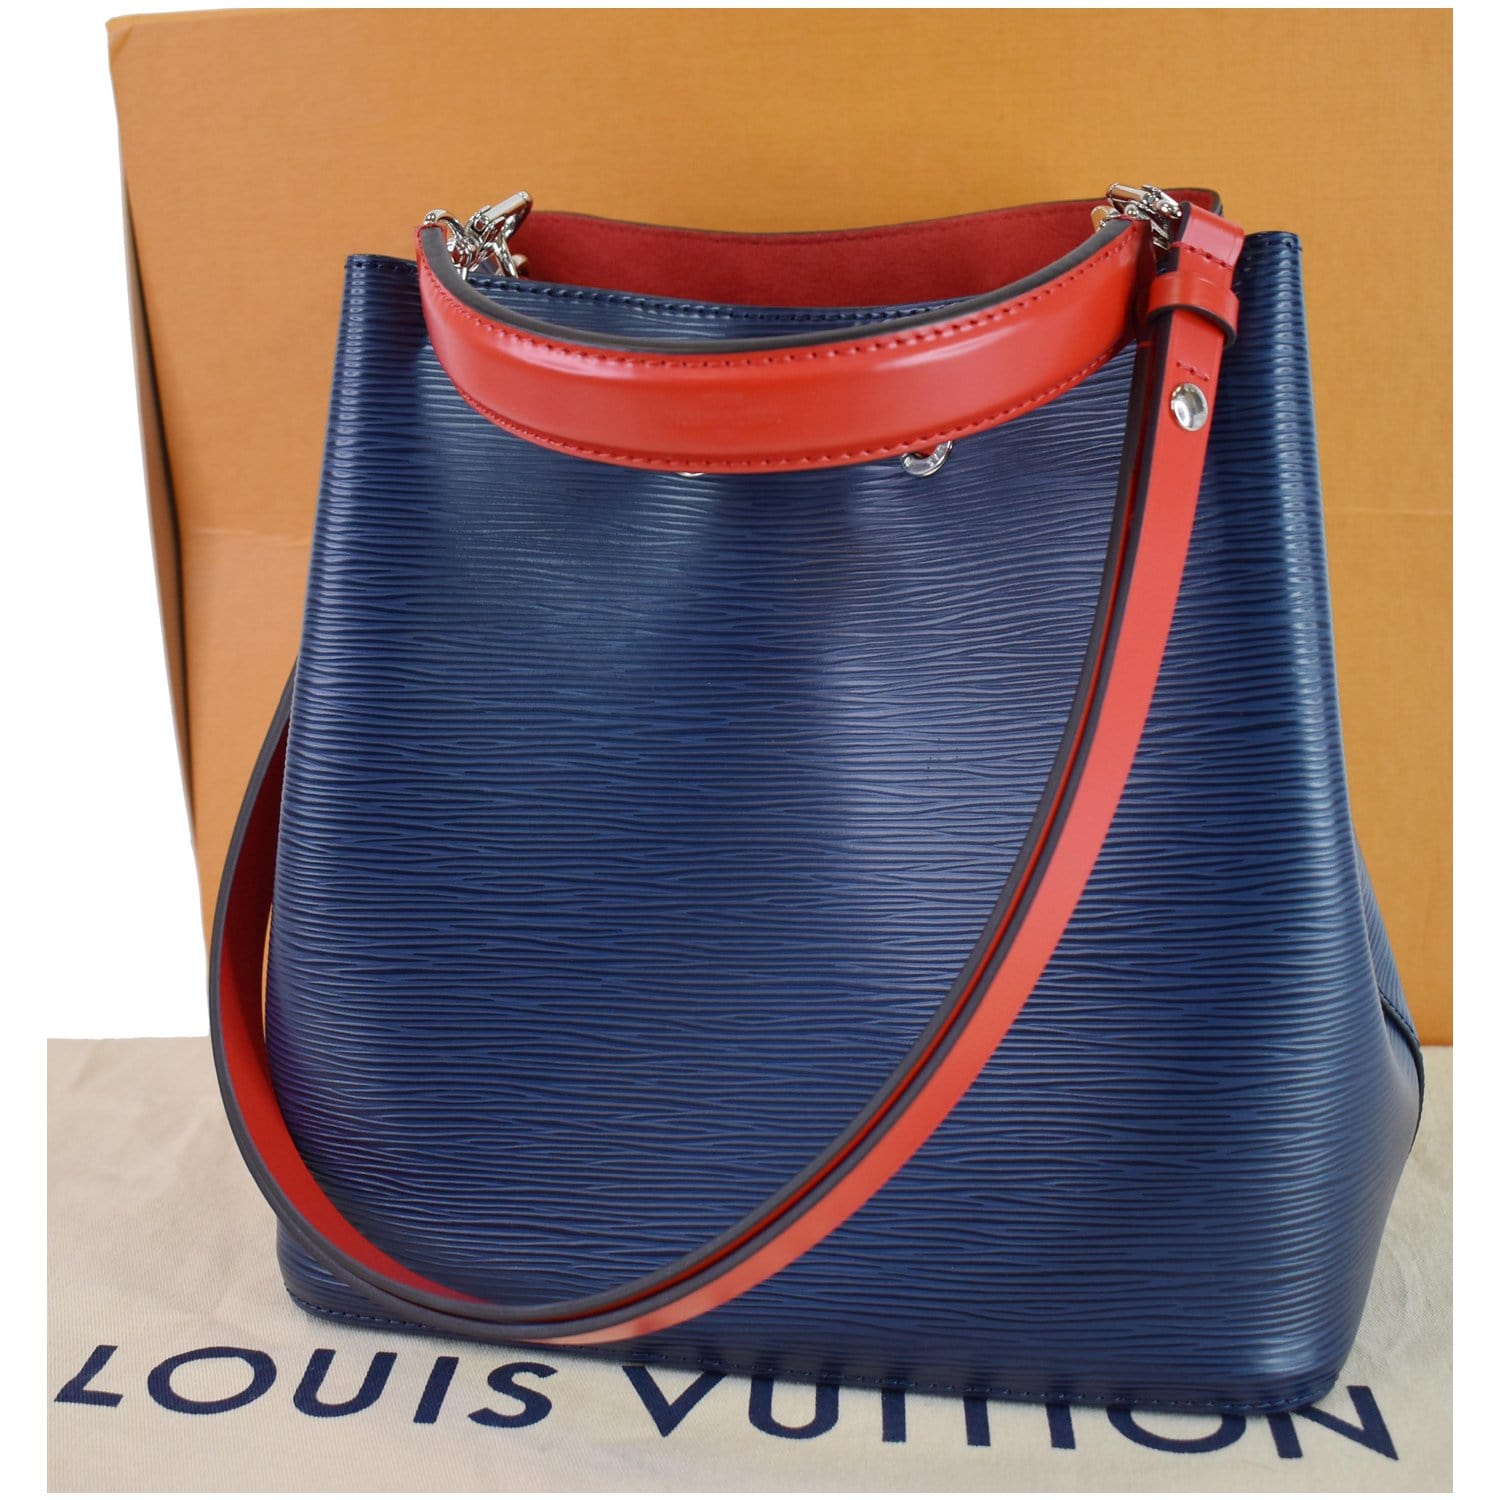 Louis Vuitton Neonoe MM Epi leather Indigo